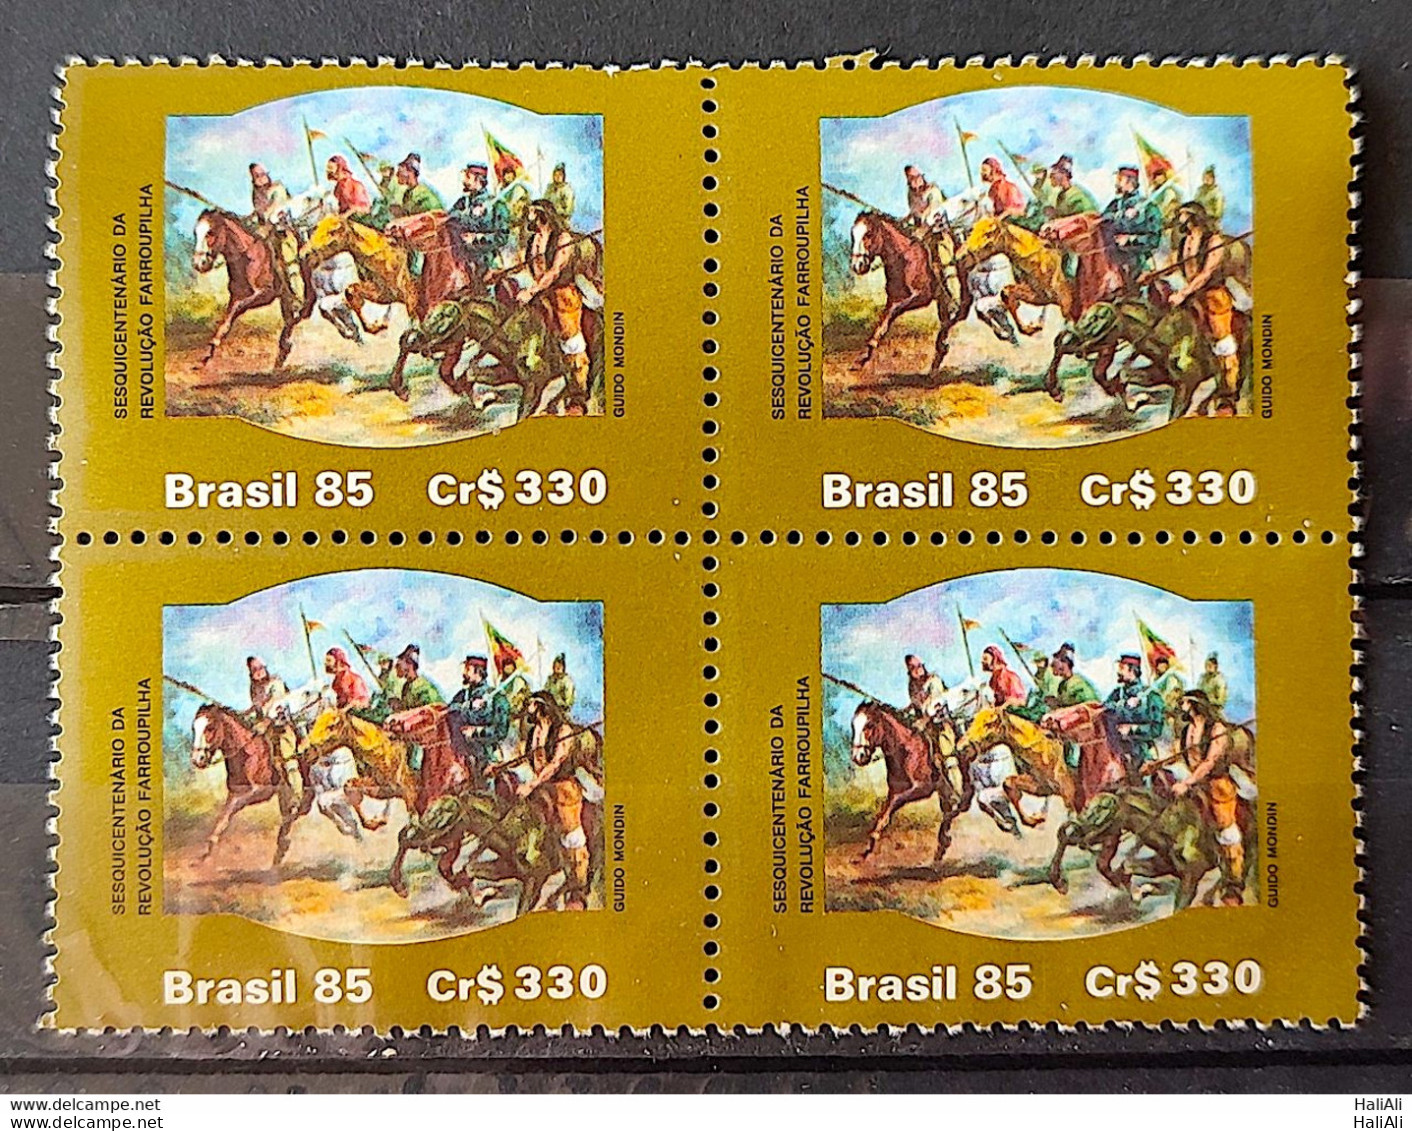 C 1481 Brazil Stamp 150 Years Revolution Military Farroupilha 1985 Block Of 4 - Ongebruikt